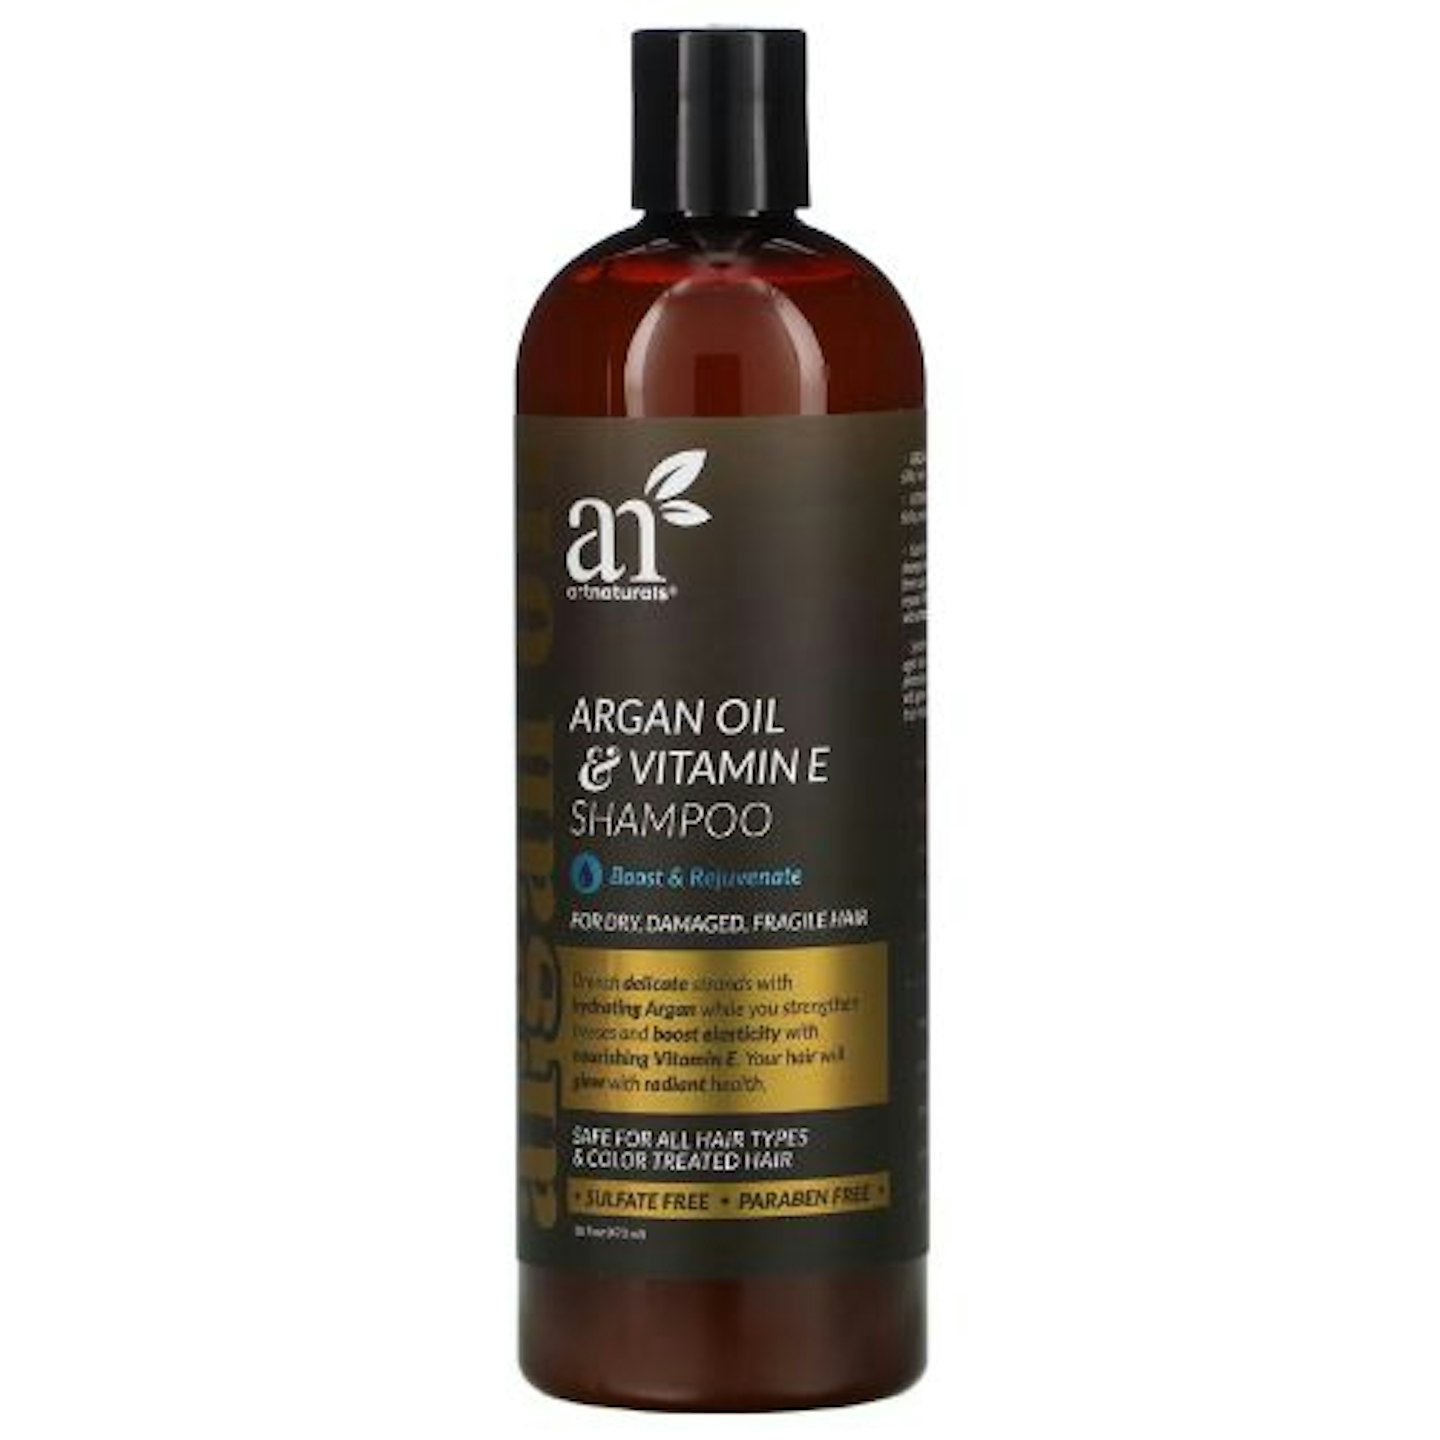 ArtNaturals Argan Oil Shampoo for Hair Growth